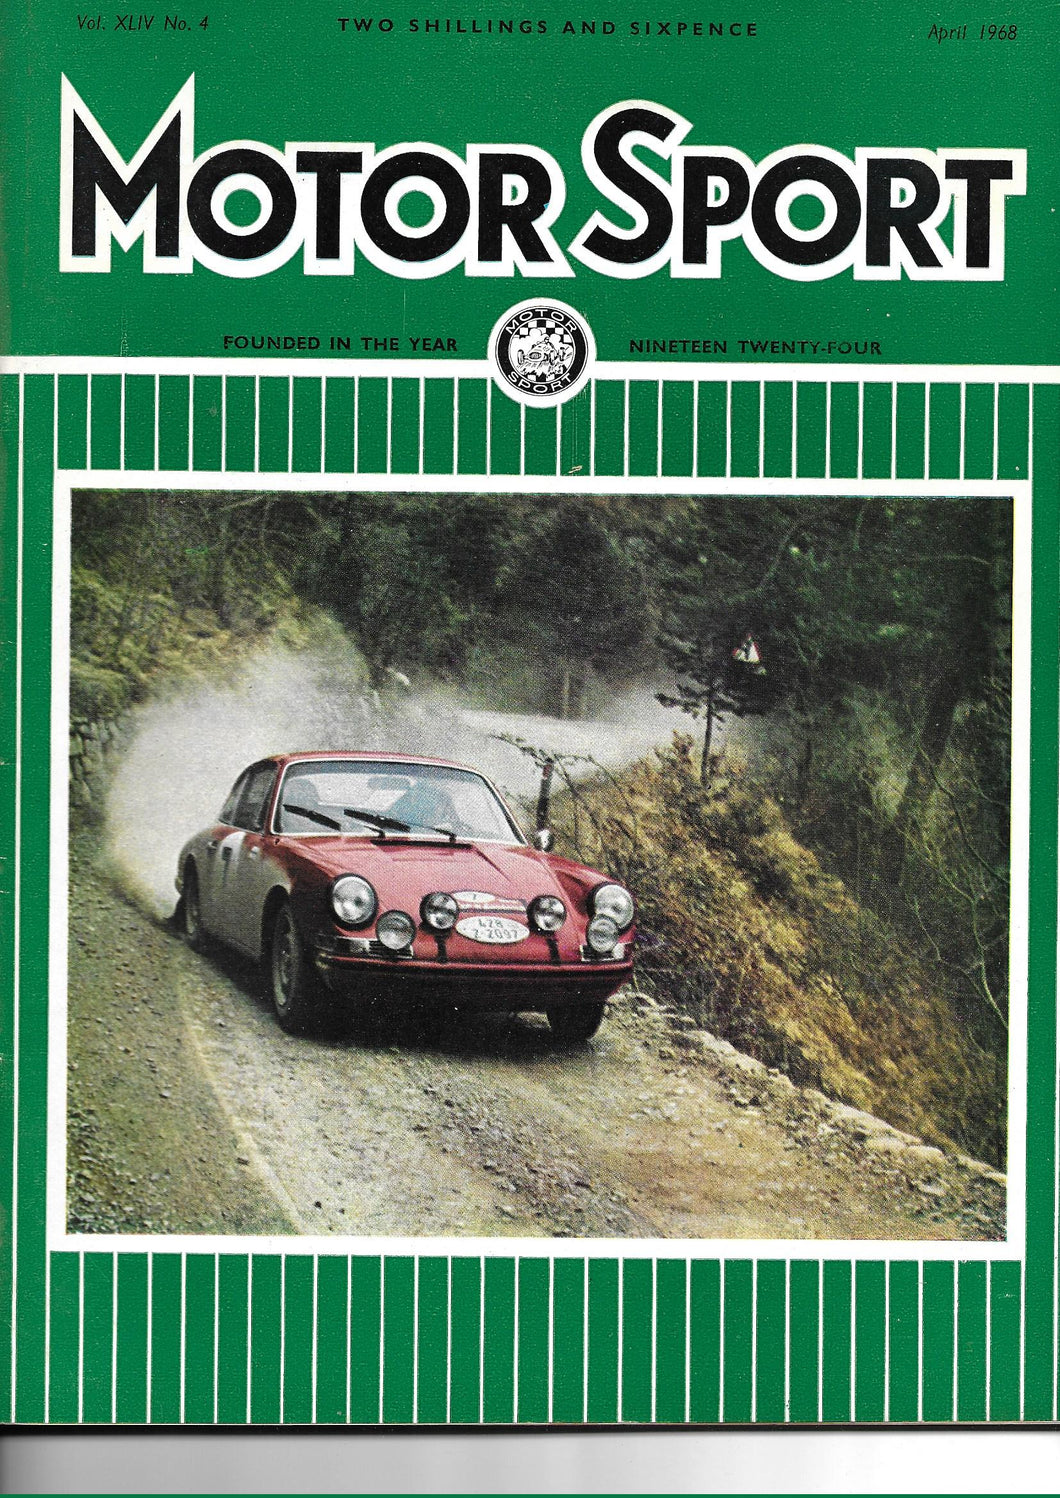 Motor Sport Magazine Vol. XLIV No. 4 April 1968,